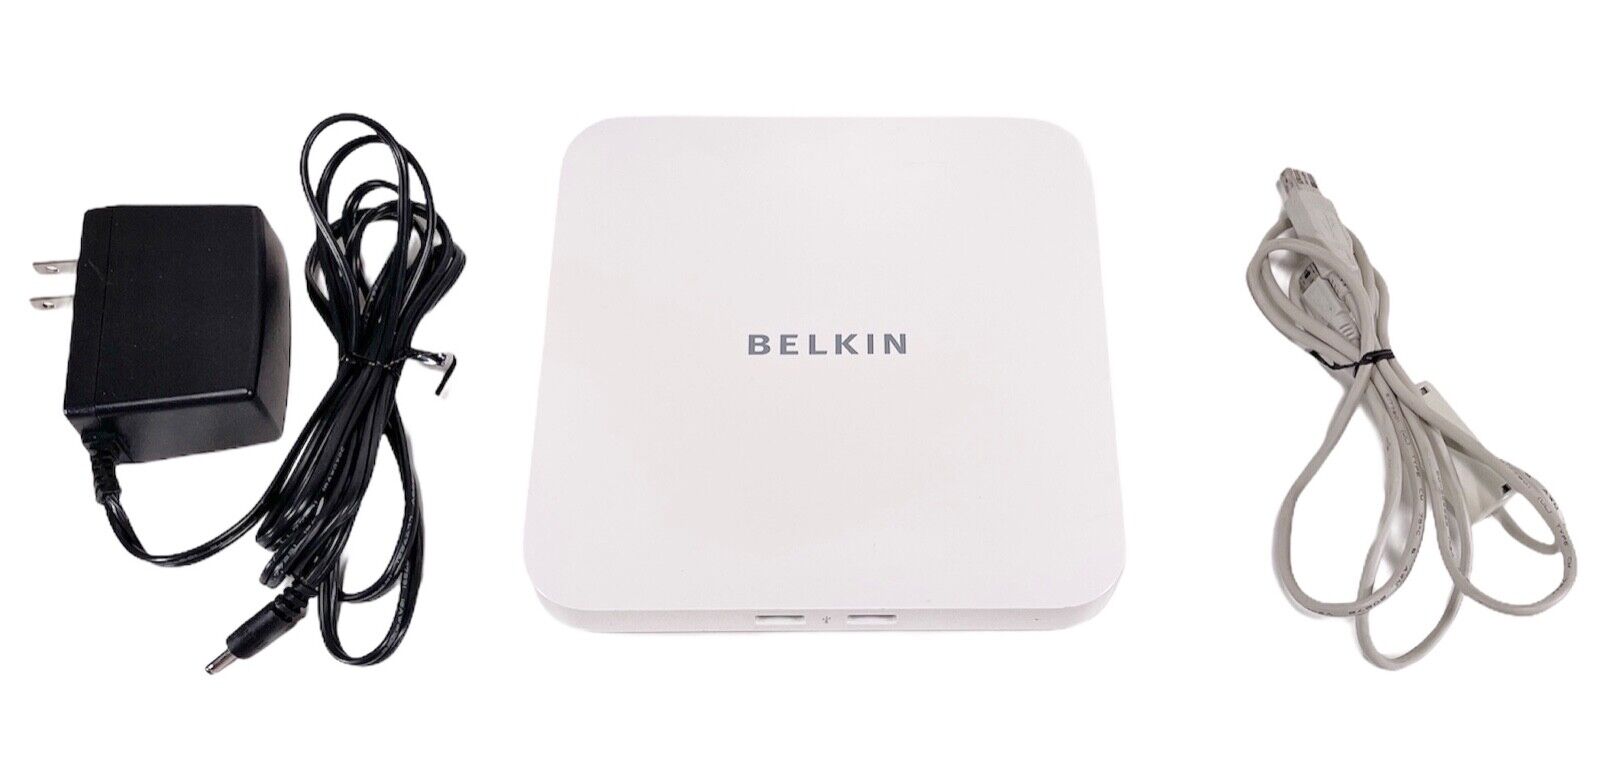 Belkin USB 2.0 4-Port Hub For Mac Mini F5U264